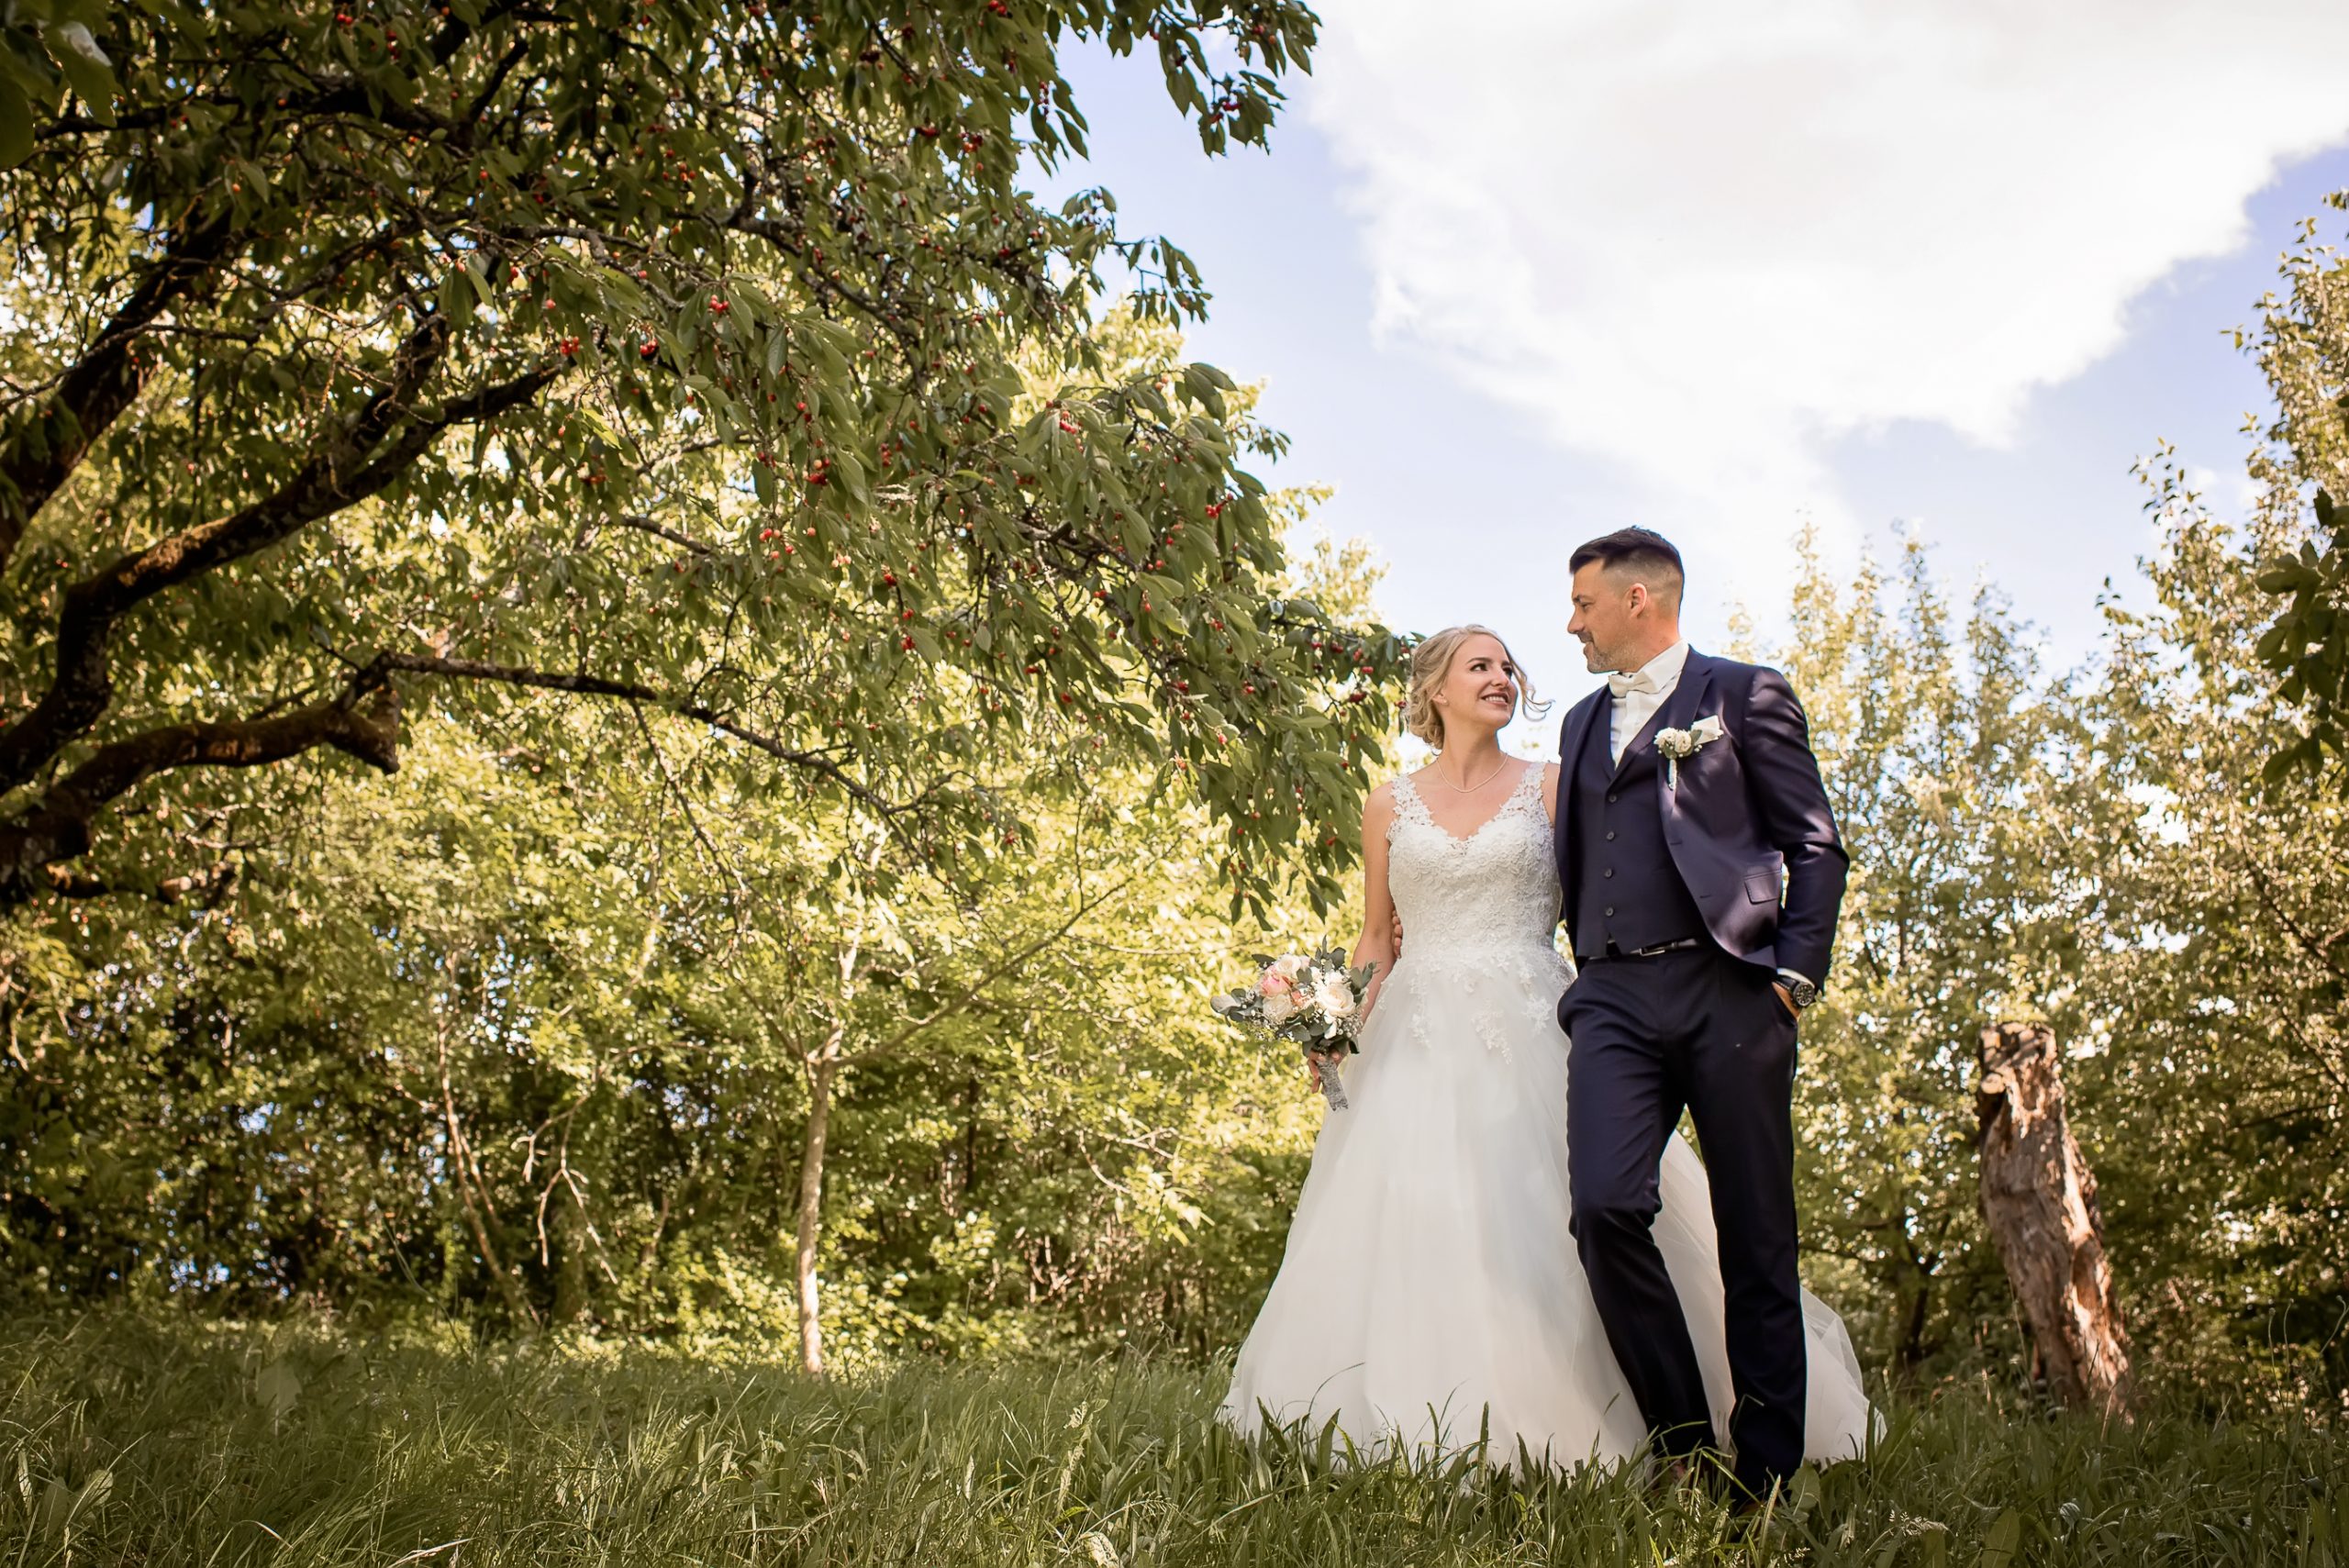 Brautpaar-Shooting in der Natur nach Hochzeit in Friesenheim